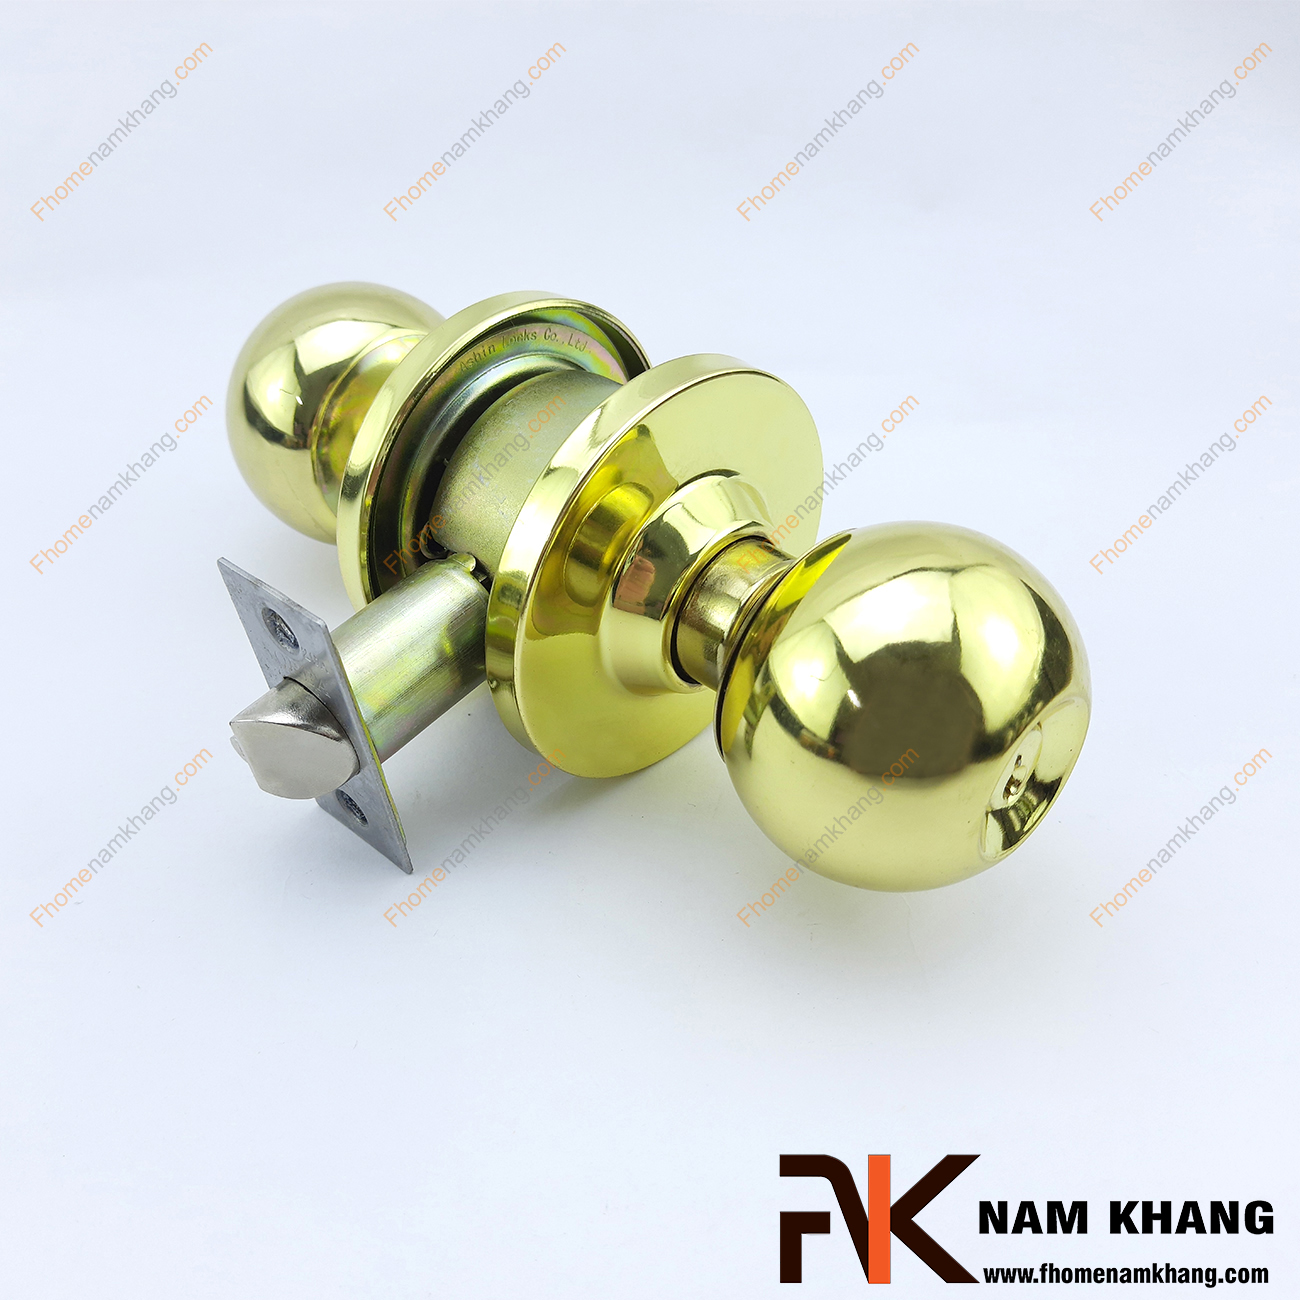 Khóa cửa tròn bằng inox cao cấp NK430KTHQ-V là dạng khóa cửa thông dụng, đơn giản, có thiết kế tay nắm tròn là quả đấm vừa tay của một người trưởng thành.